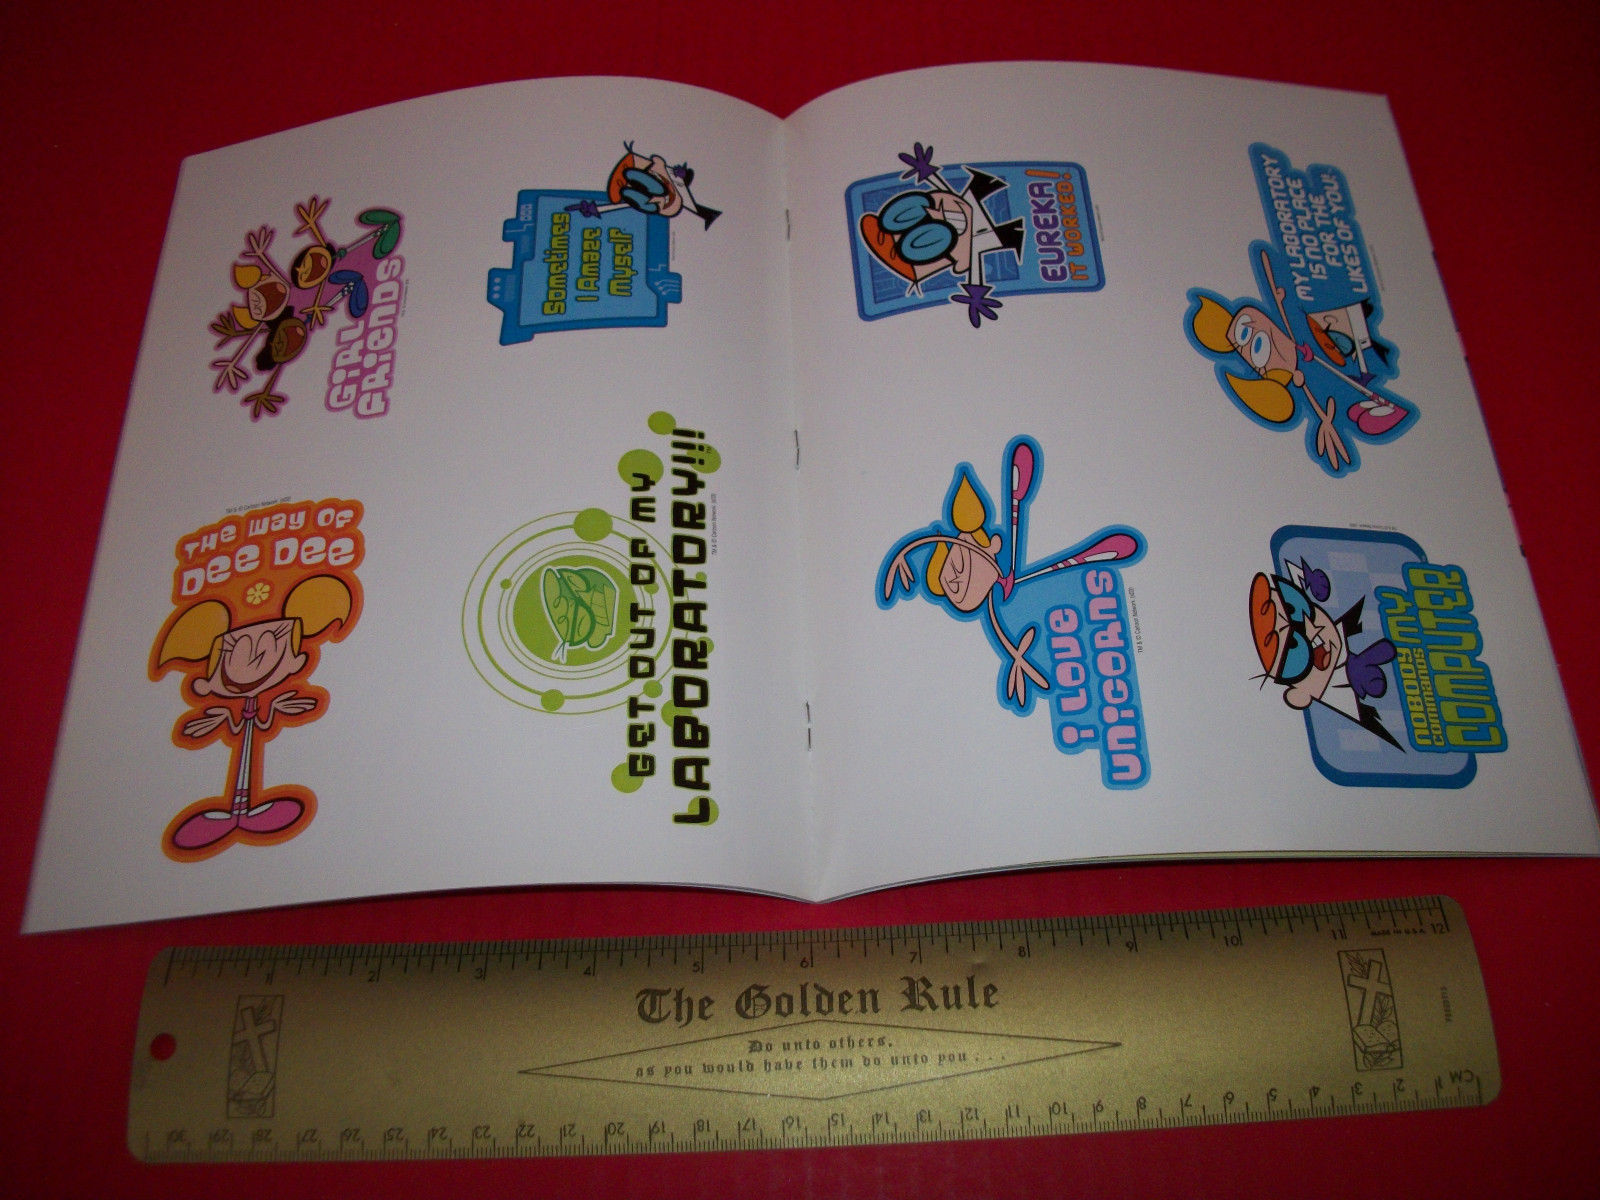 Vintage Sanrio Hello Kitty at the Zoo Mini Sticker Book 